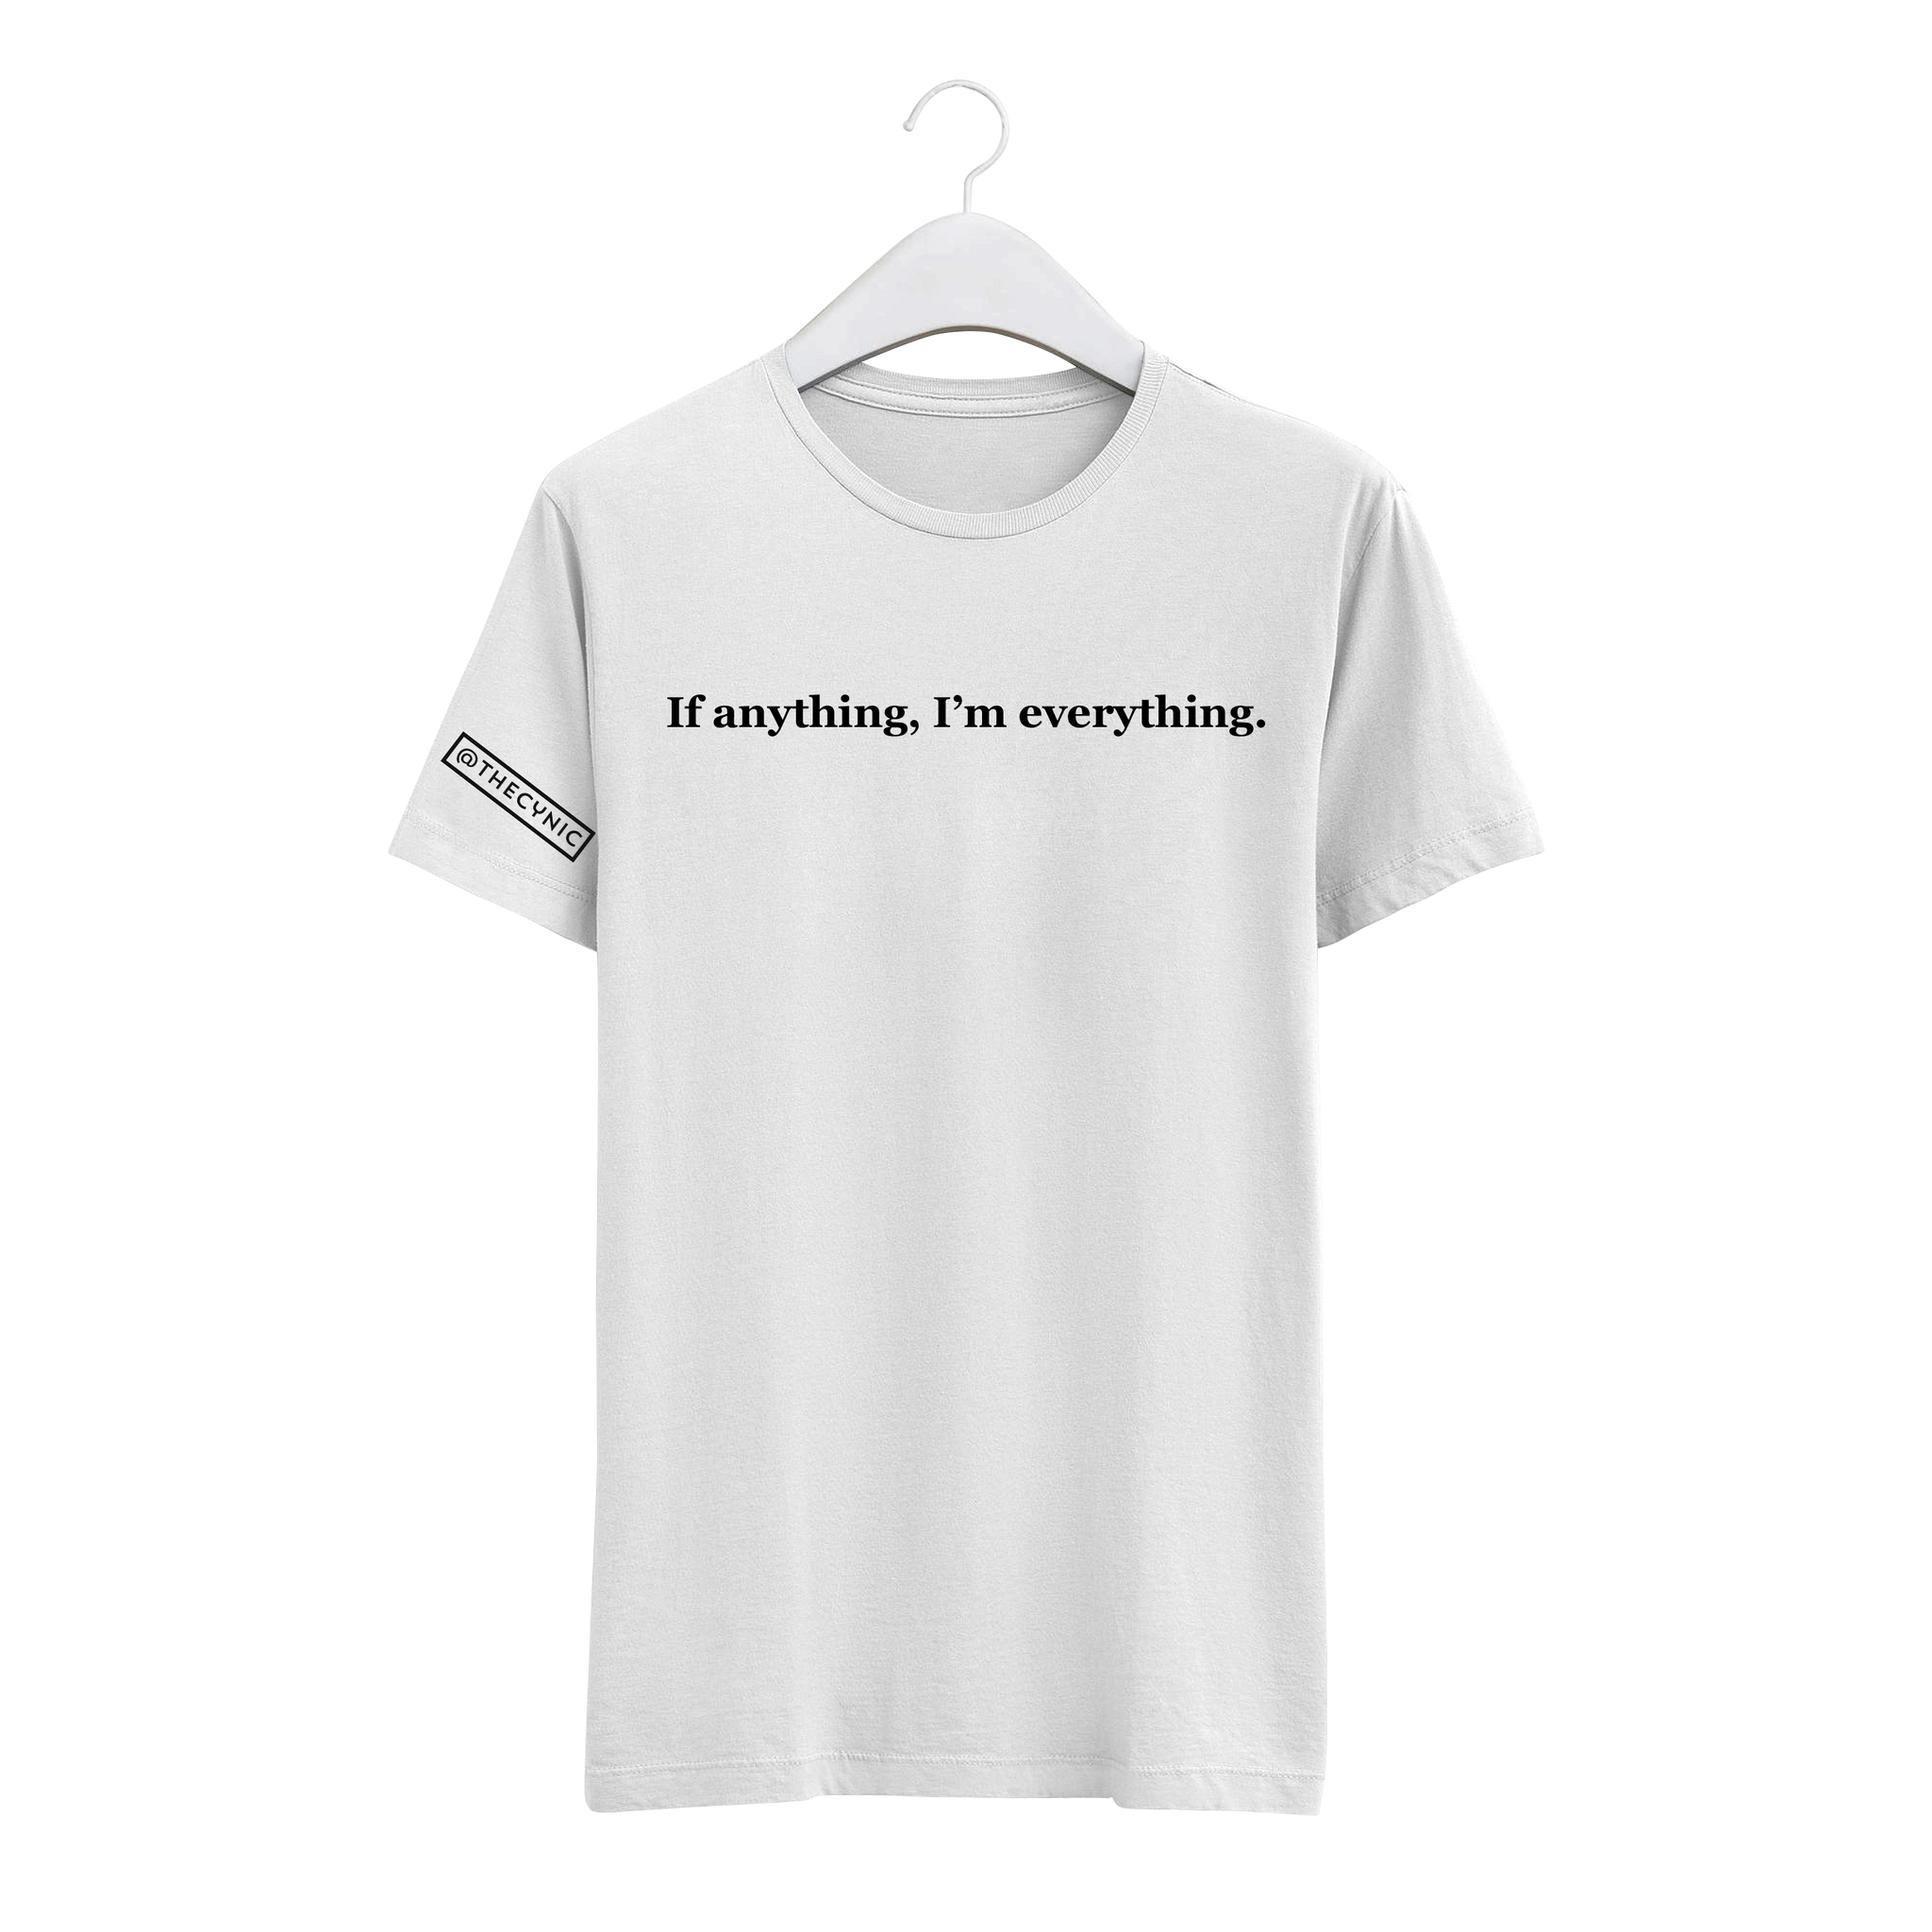 If anything, I'm everything. - Unisex Tee